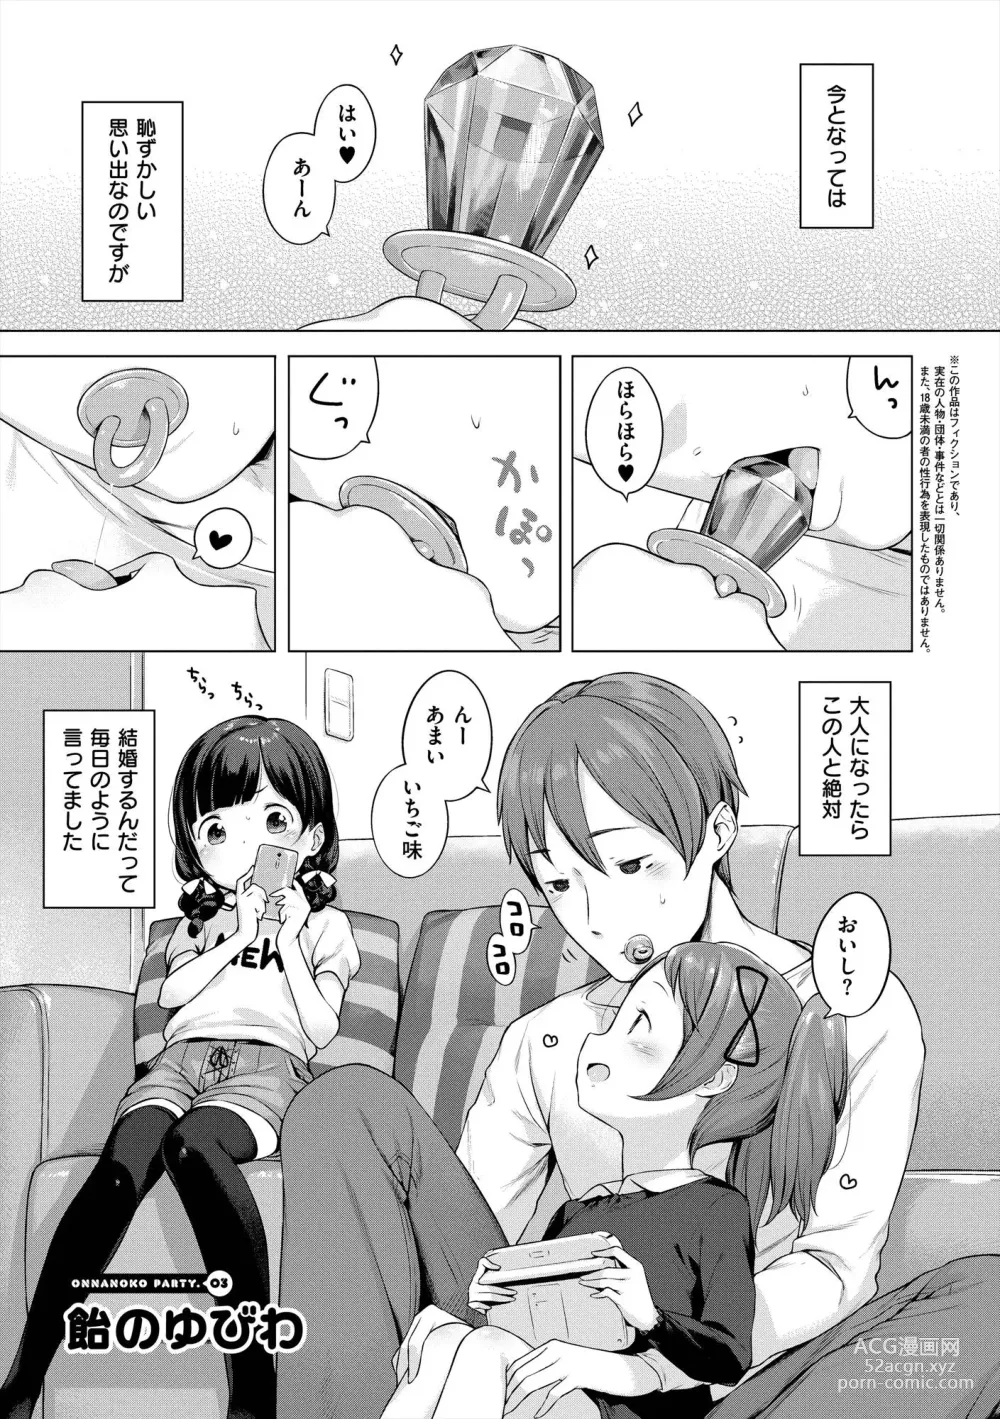 Page 23 of manga Onnanoko Party.